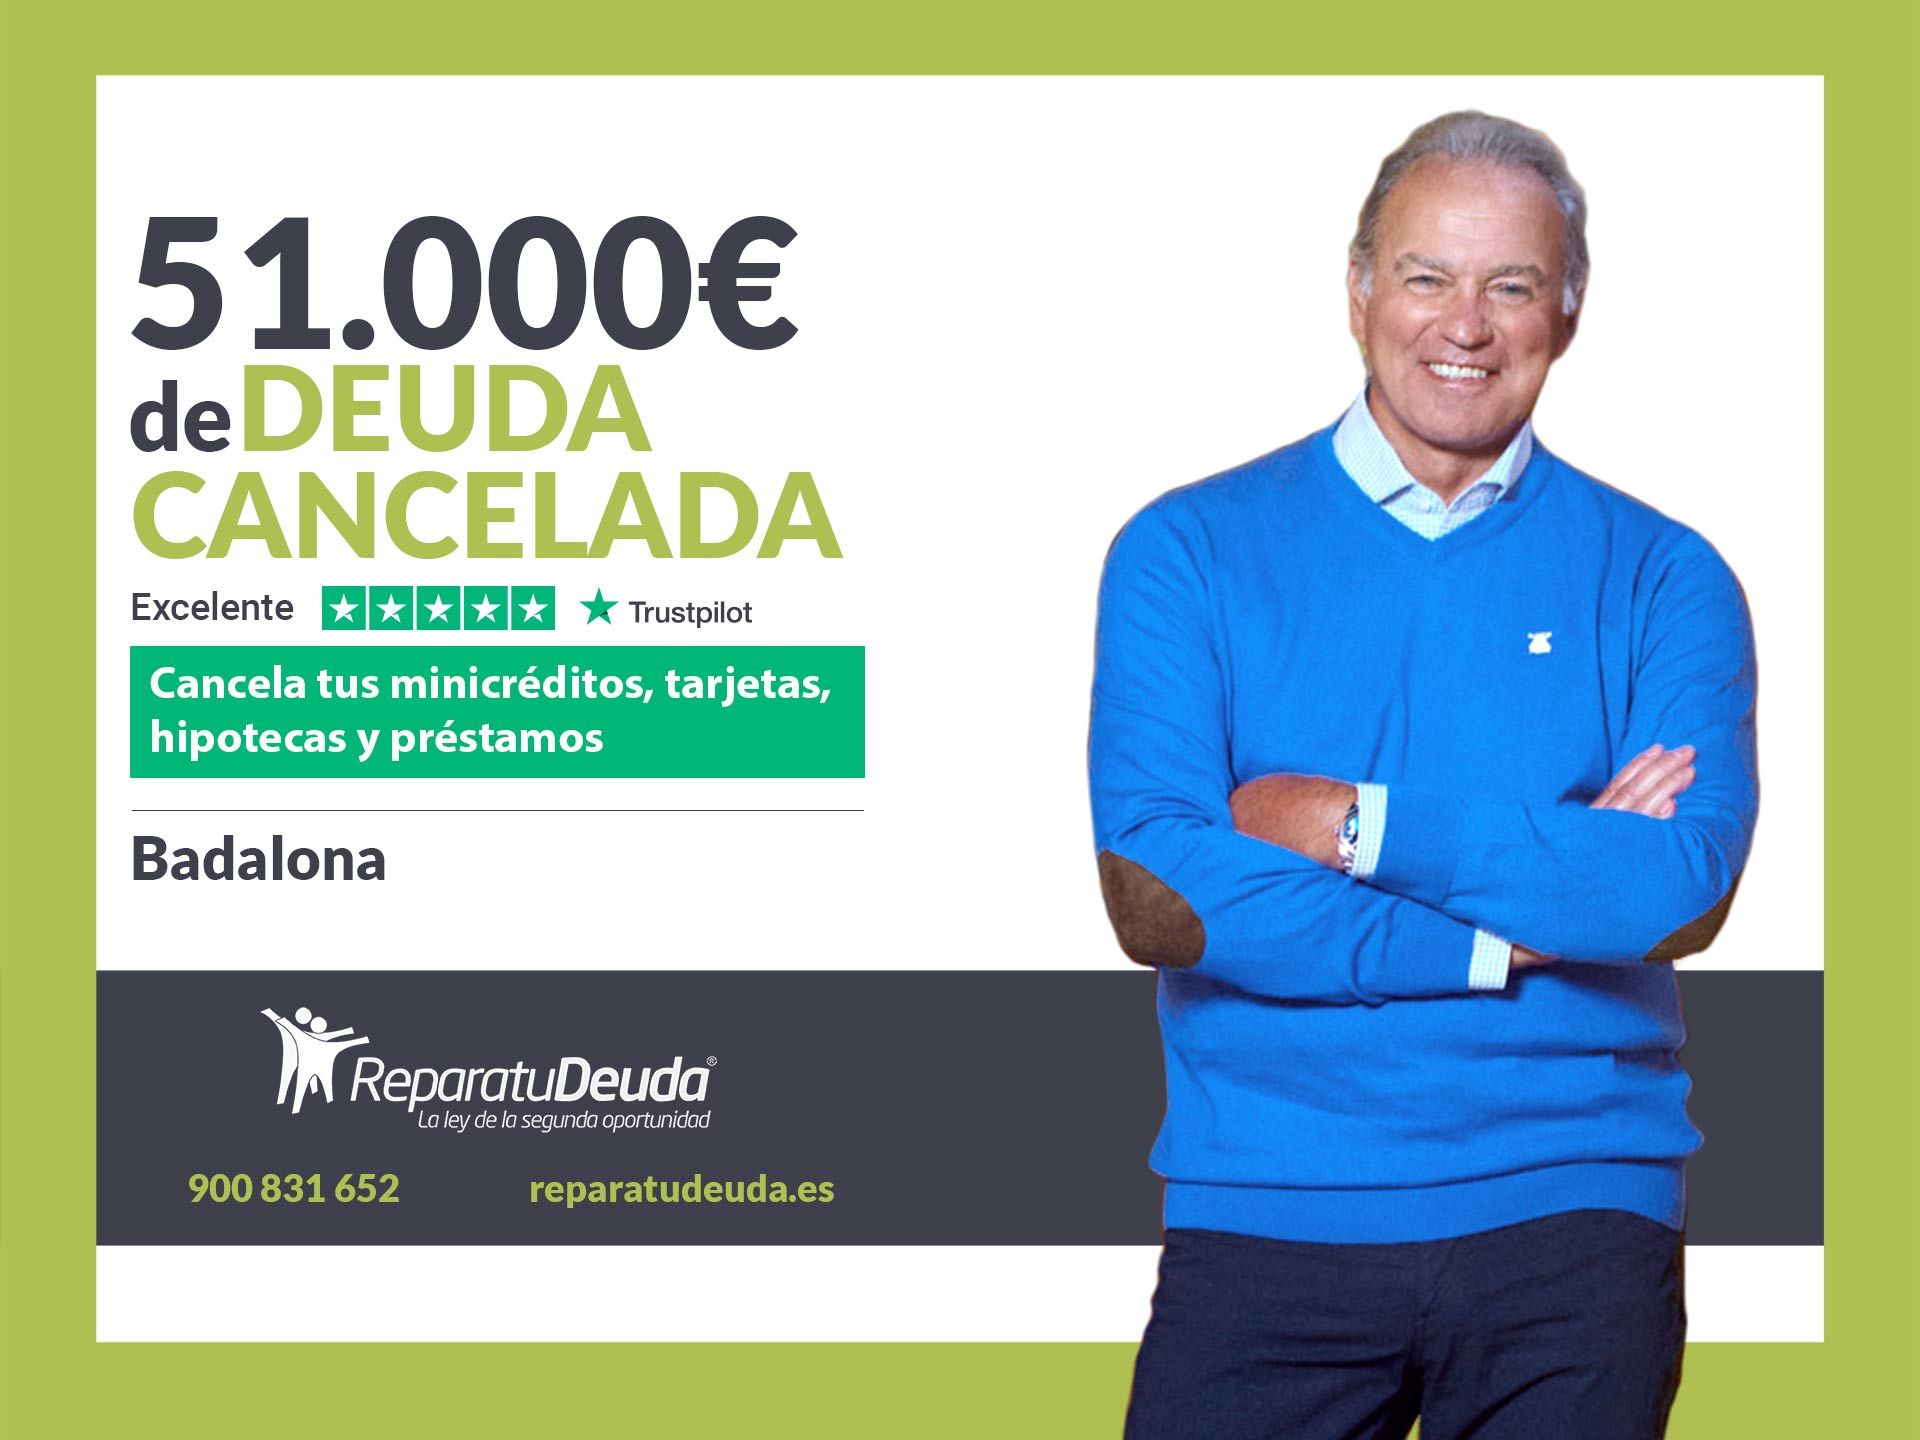 Repara tu Deuda Abogados cancela 51.000? en Badalona (Barcelona) con la Ley de Segunda Oportunidad